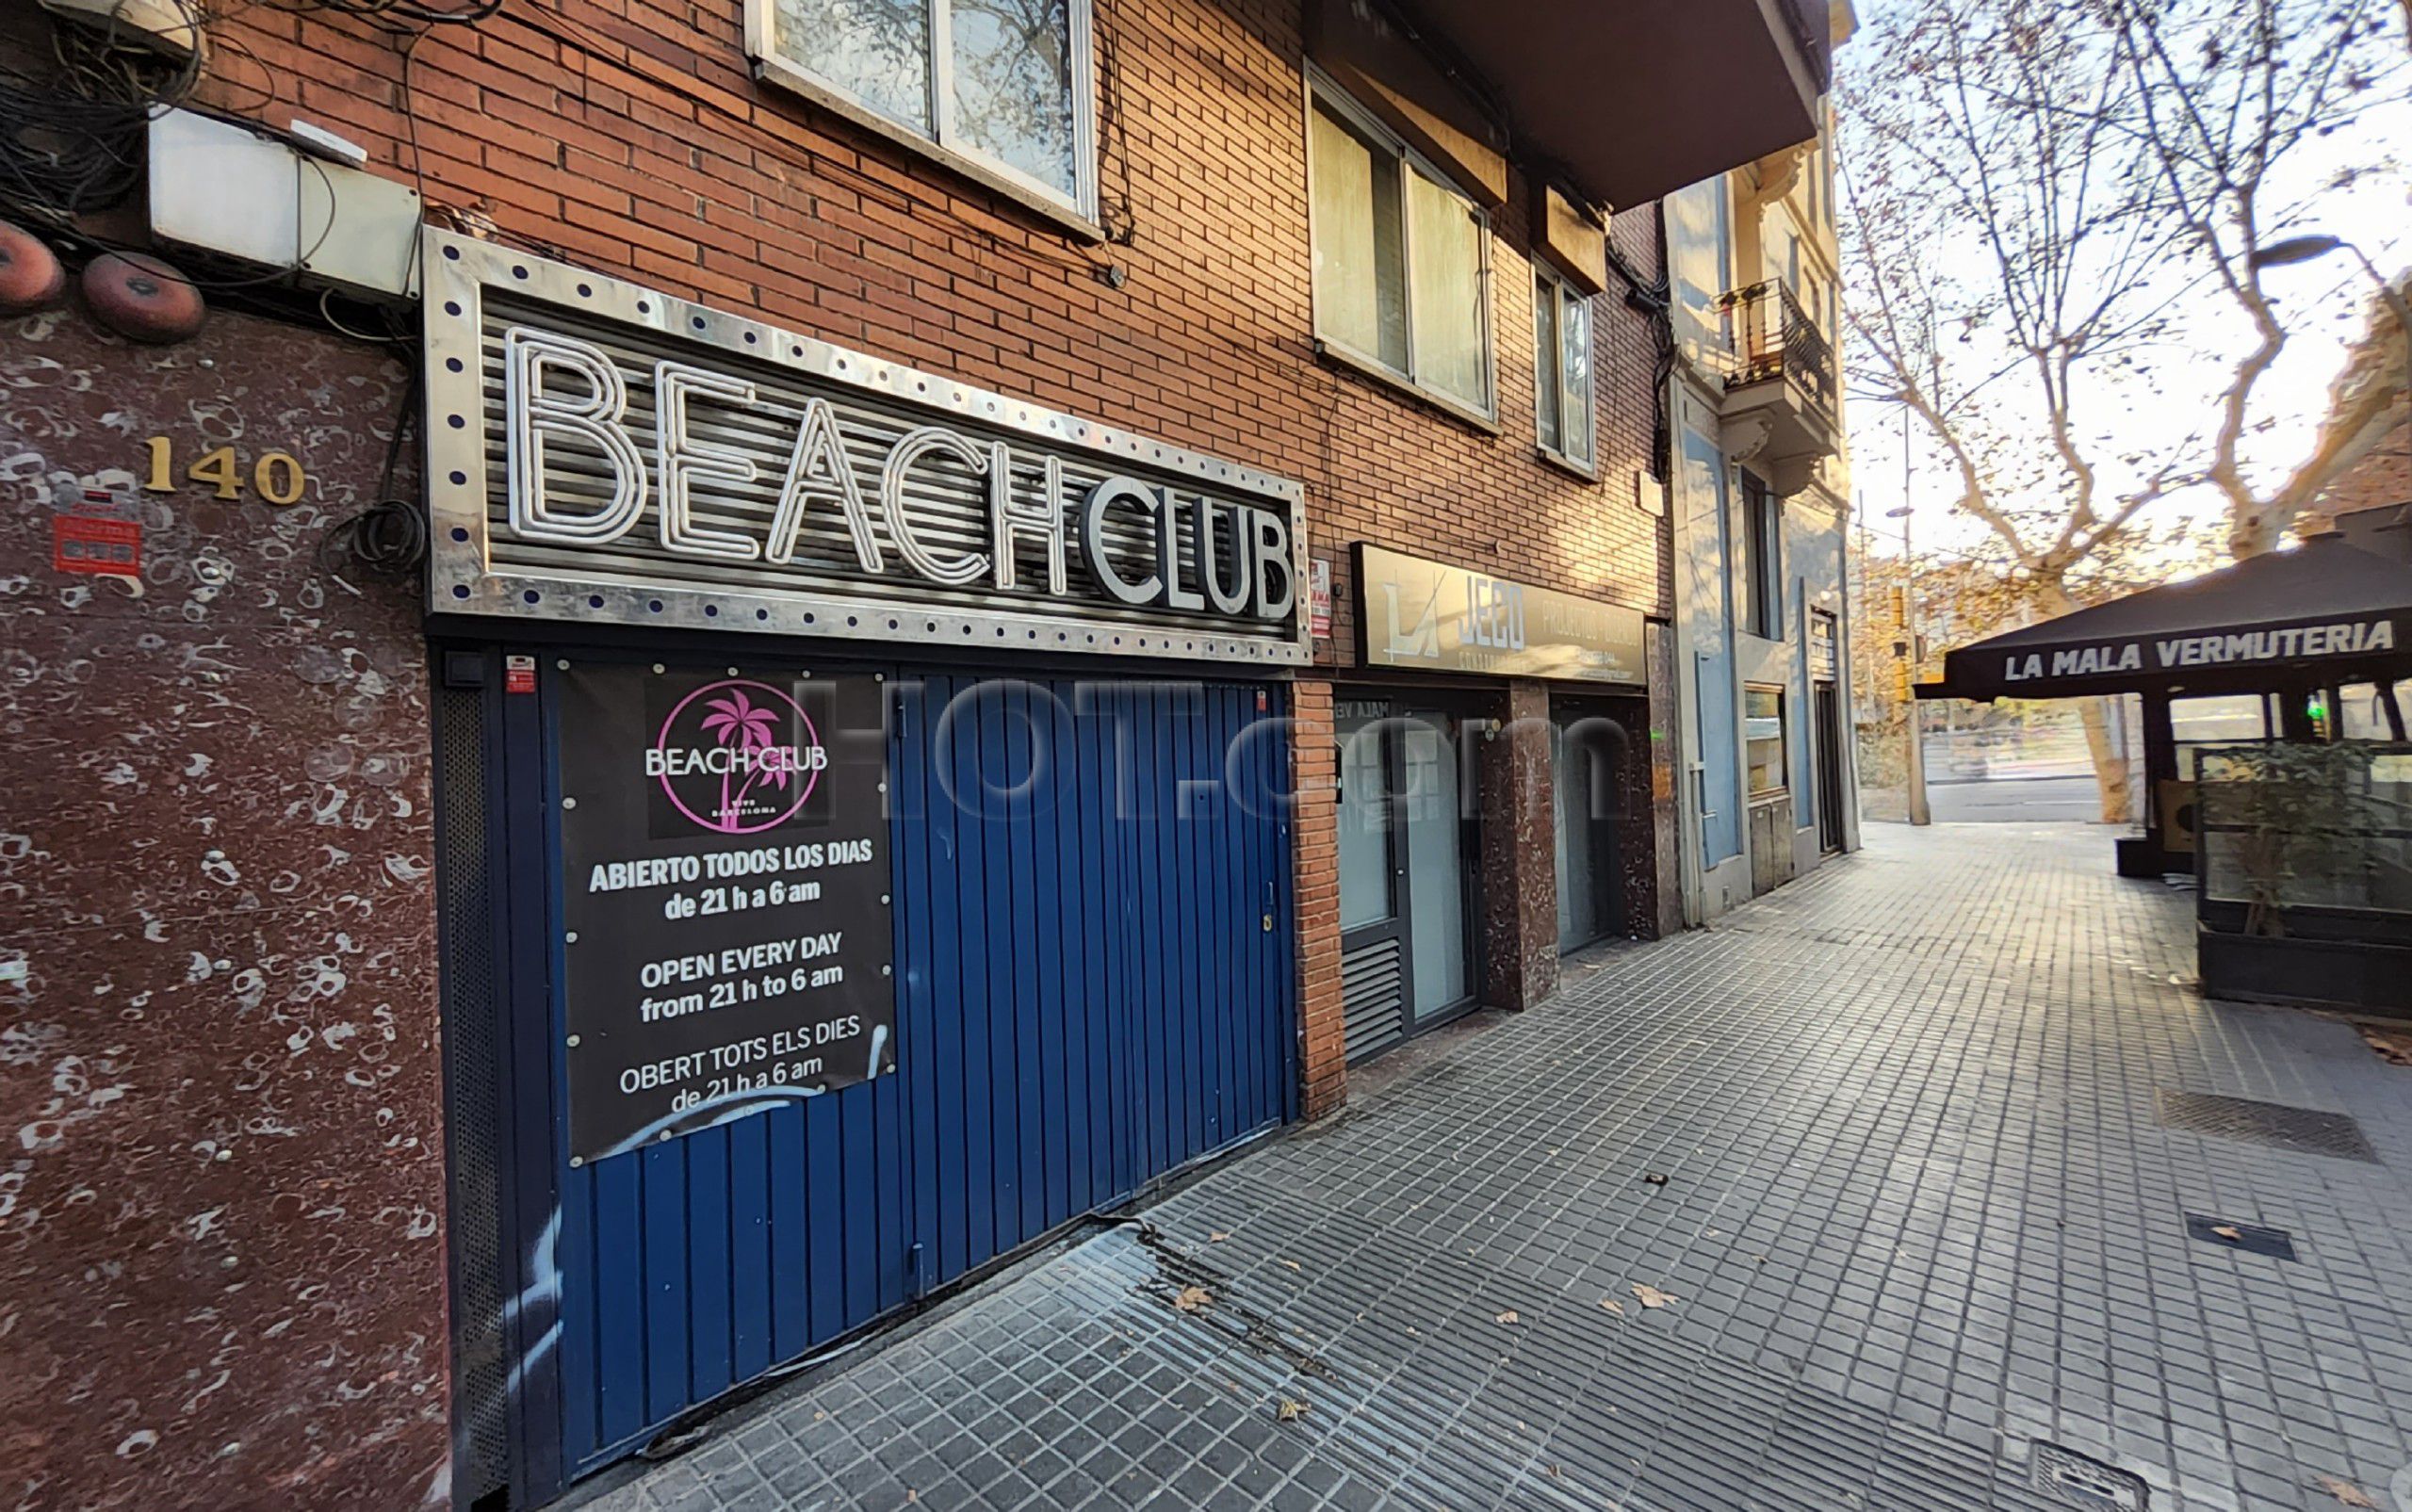 Barcelona, Spain Beach Club